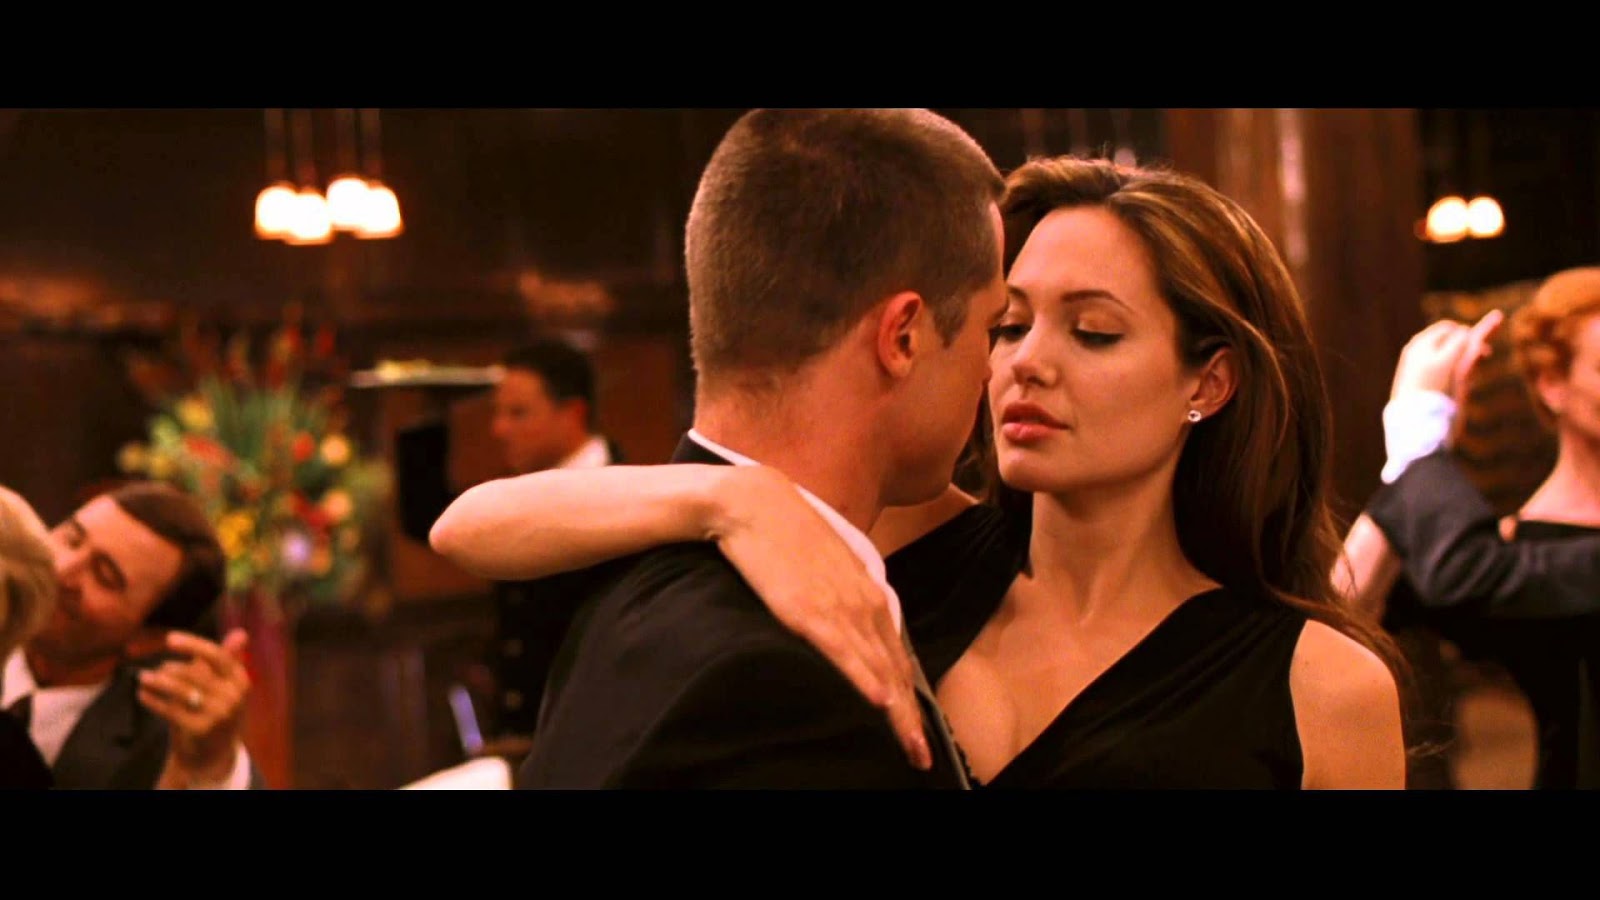 Брэд Питт и Анджелина Джоли чувственно танцуют танго. Cafe Anatolia ”Tango to Evora” 